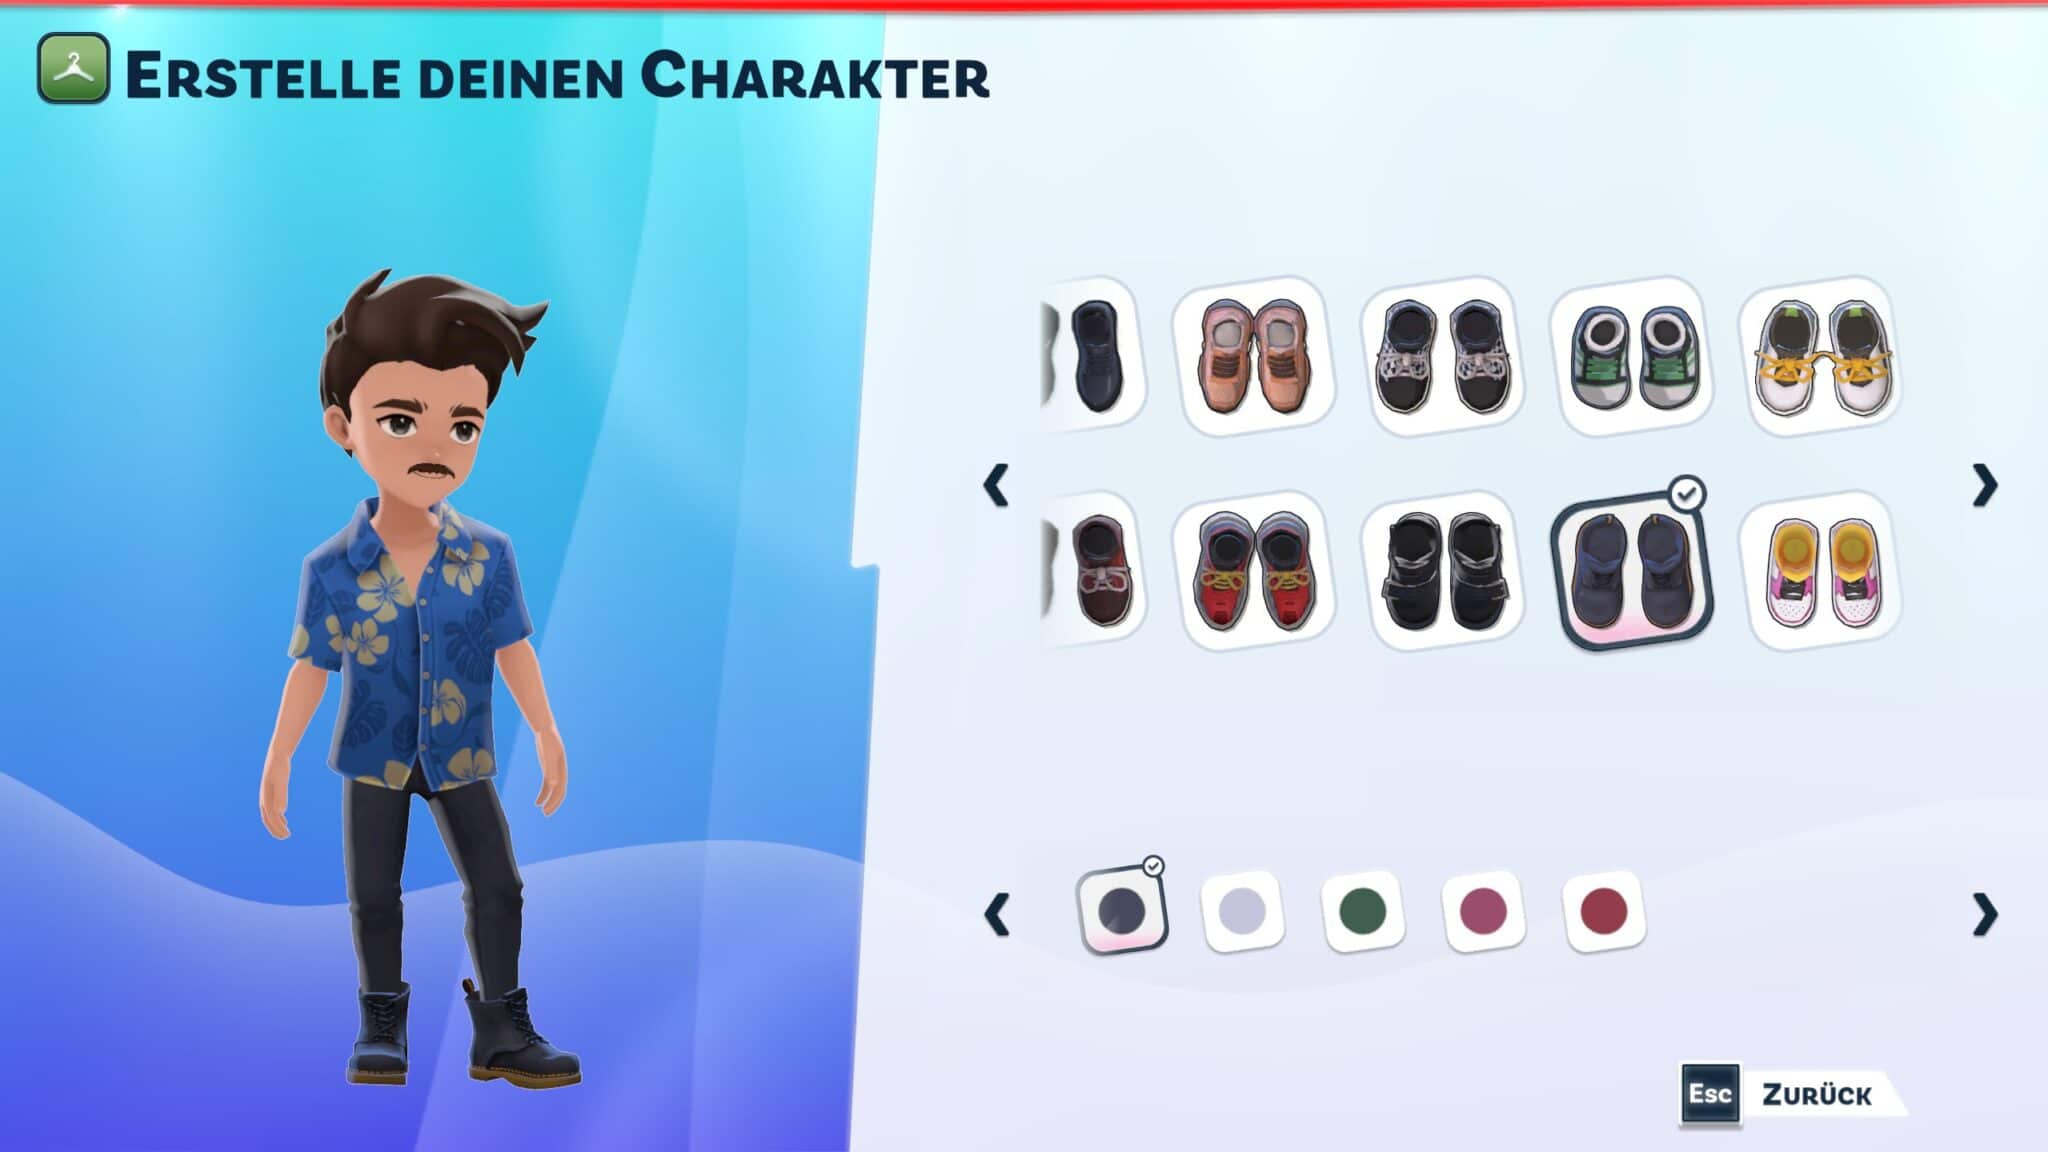 Редактор персонажей обширен, а многочисленные дополнительные наряды можно приобрести в самой игре.